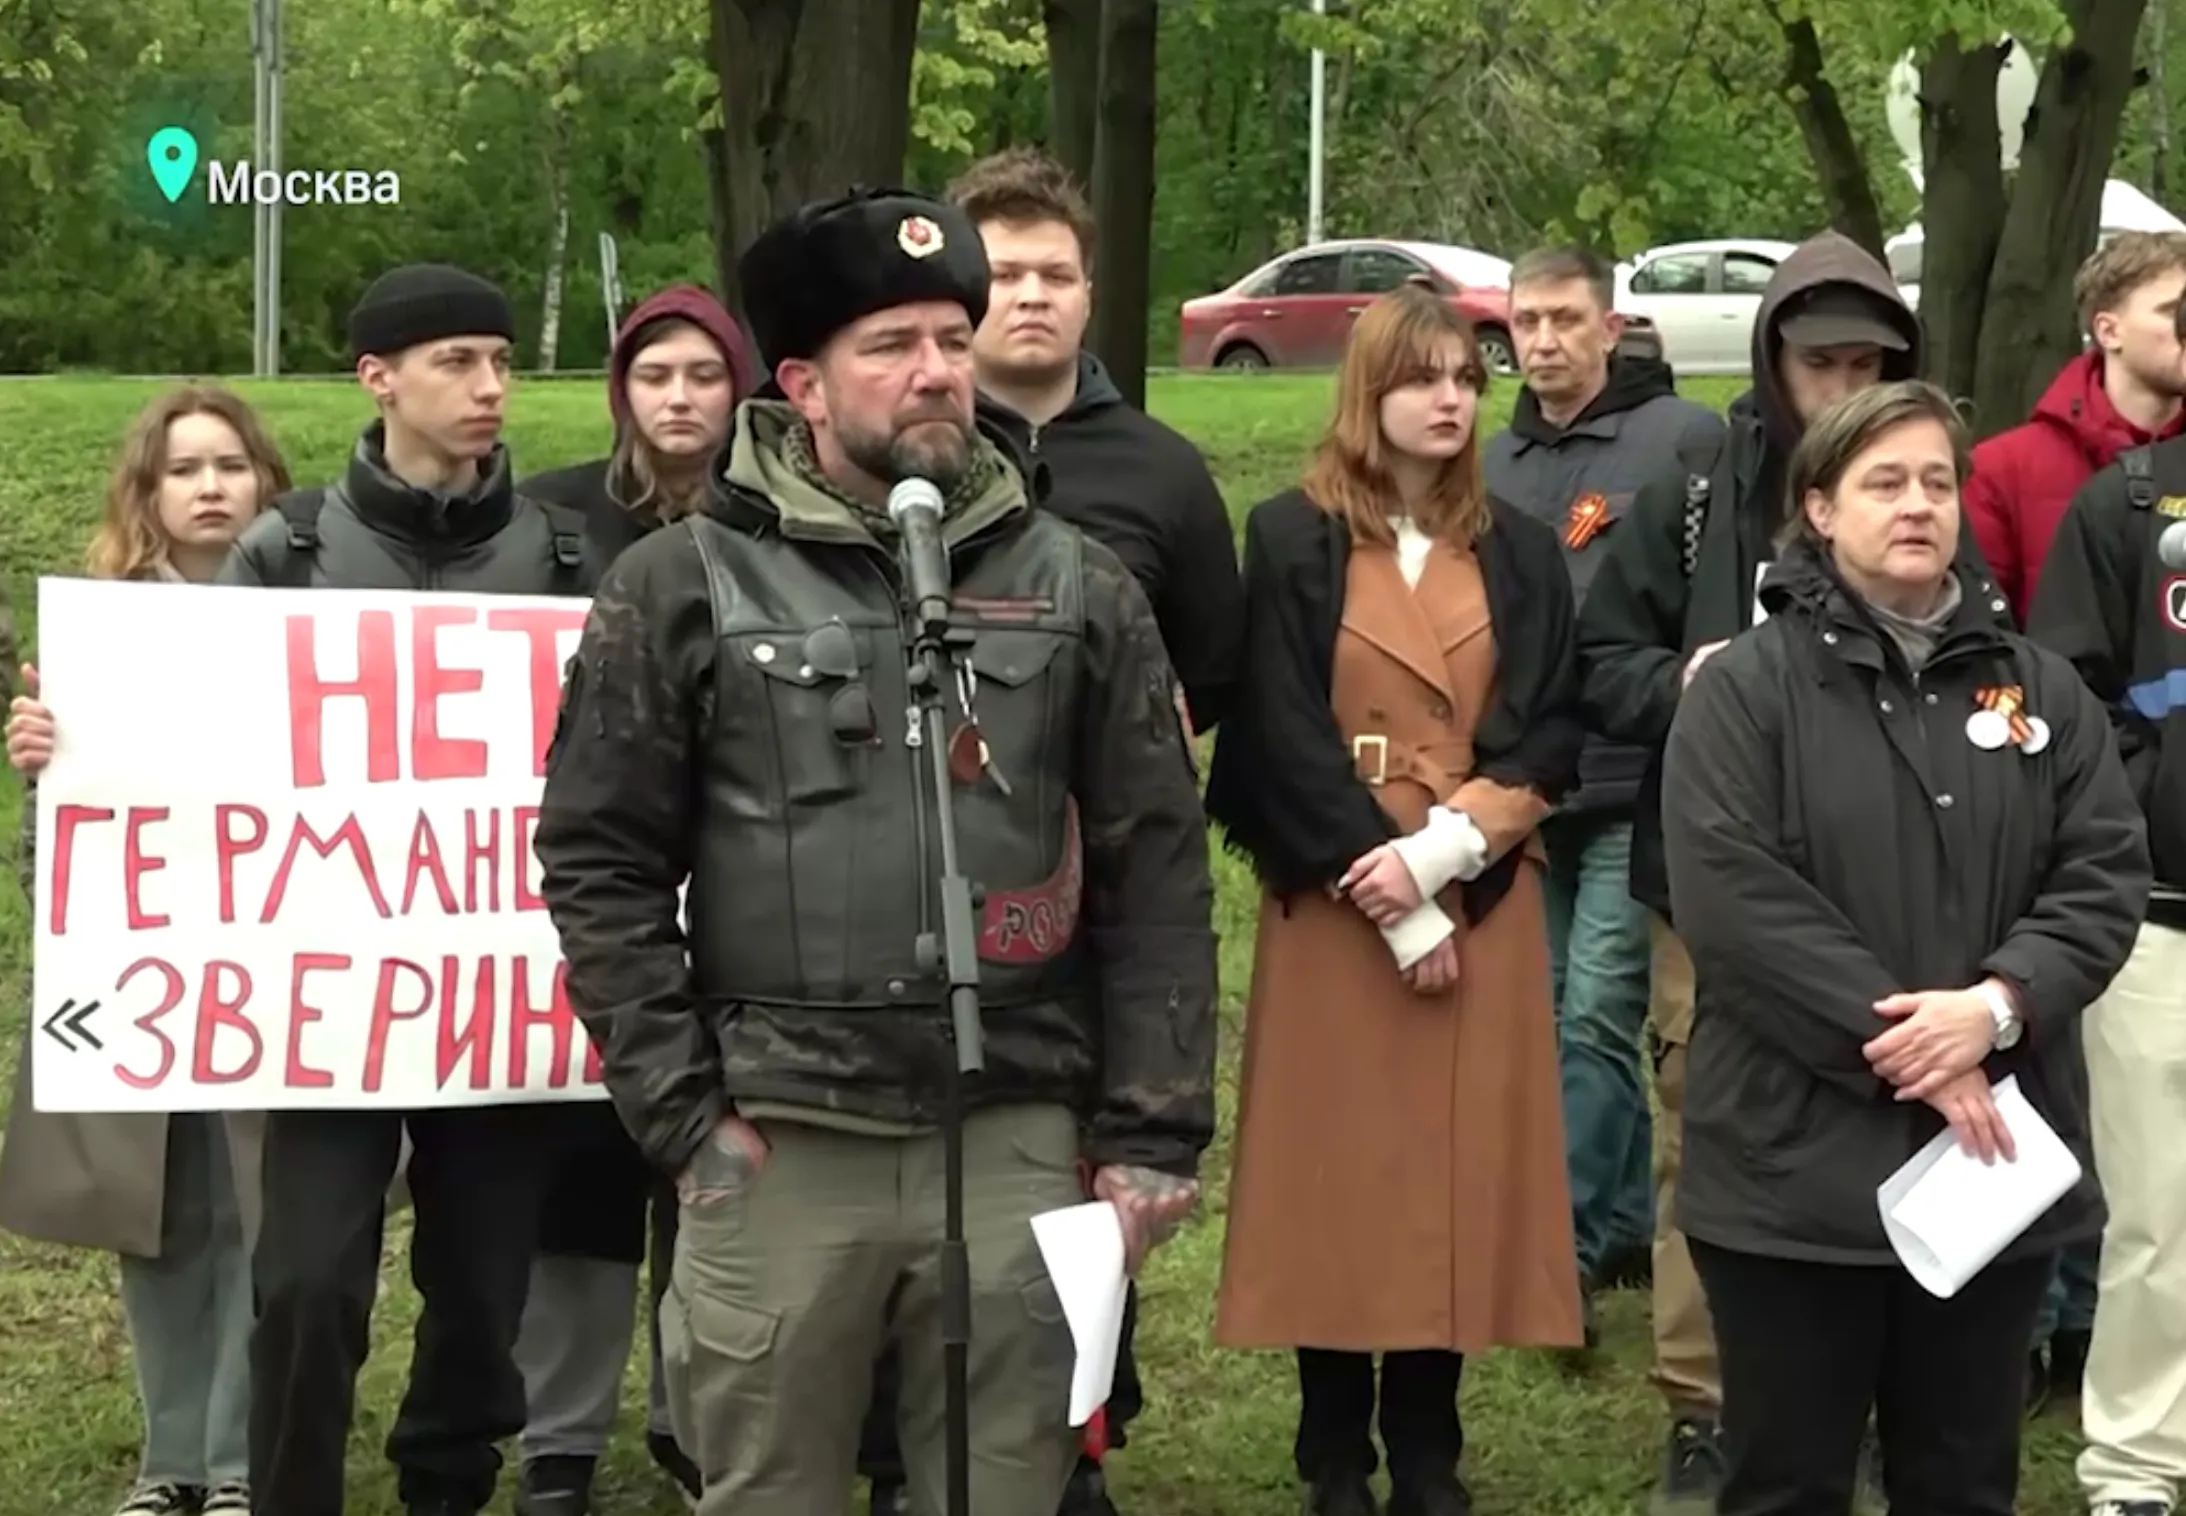 У посольства ФРГ в Москве прошёл митинг под лозунгом "Нет германскому зверинцу"